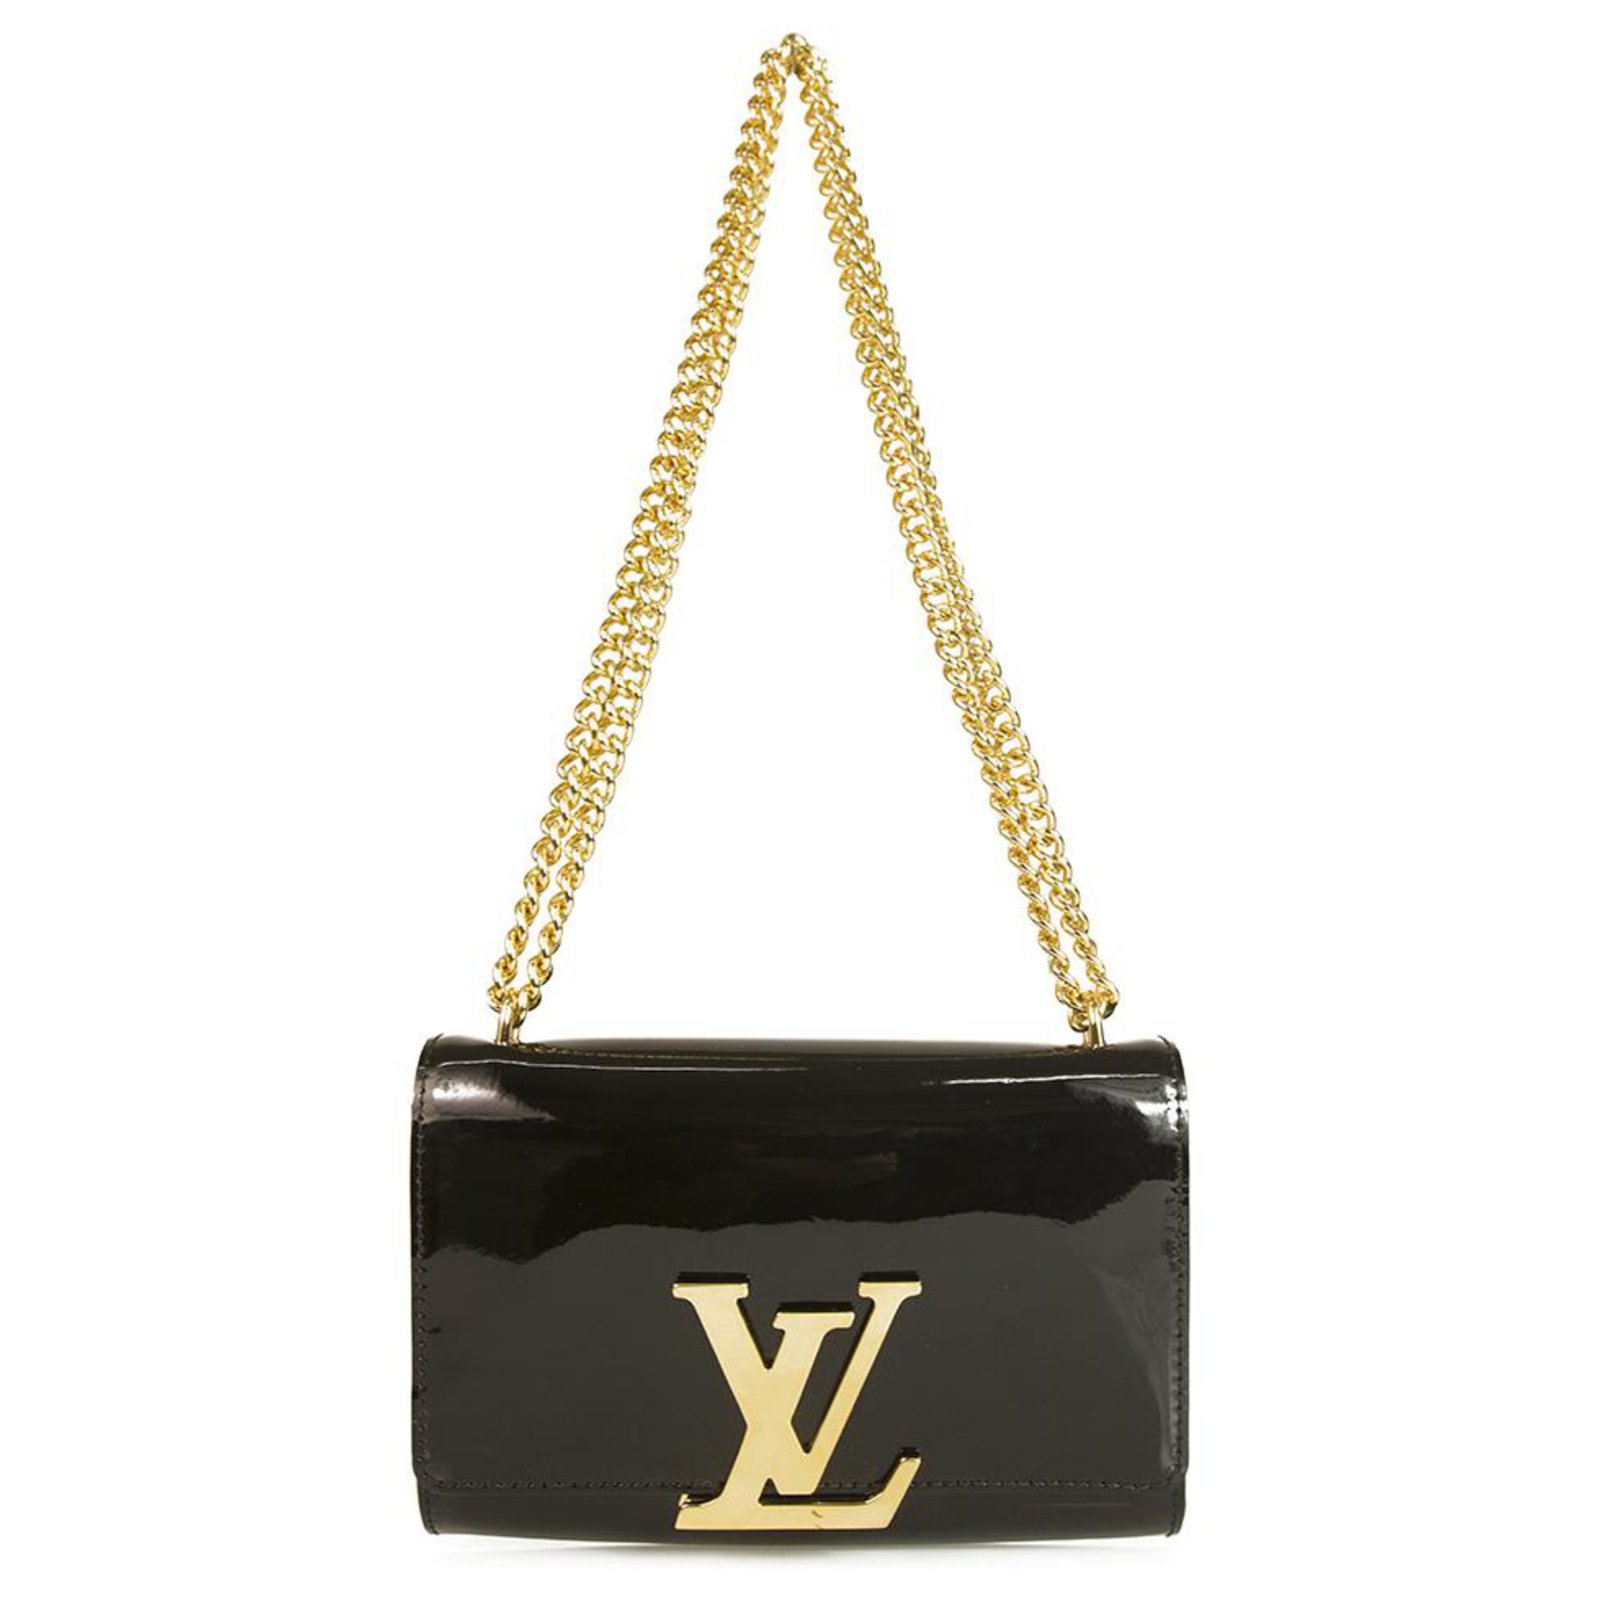 Mütze von Louis Vuitton in Schwarz und Gold Gr. One Size